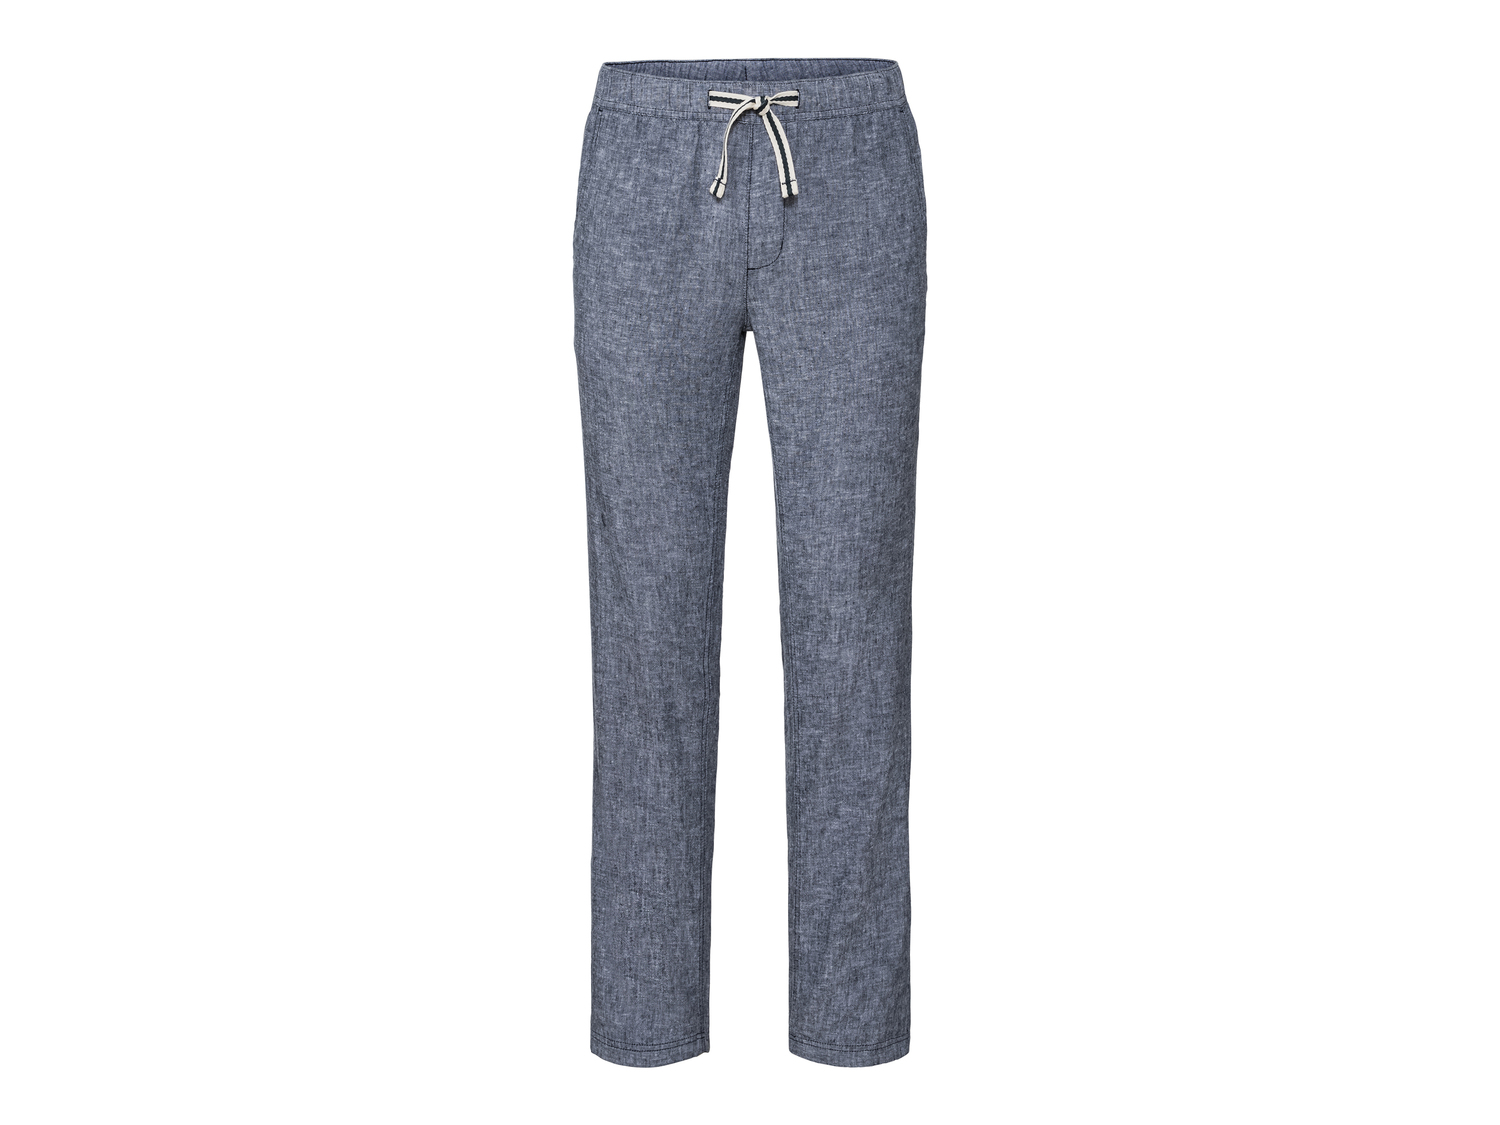 Pantaloni in lino da uomo Livergy, prezzo 9.99 &#8364; 
Misure: 48-56
Taglie ...